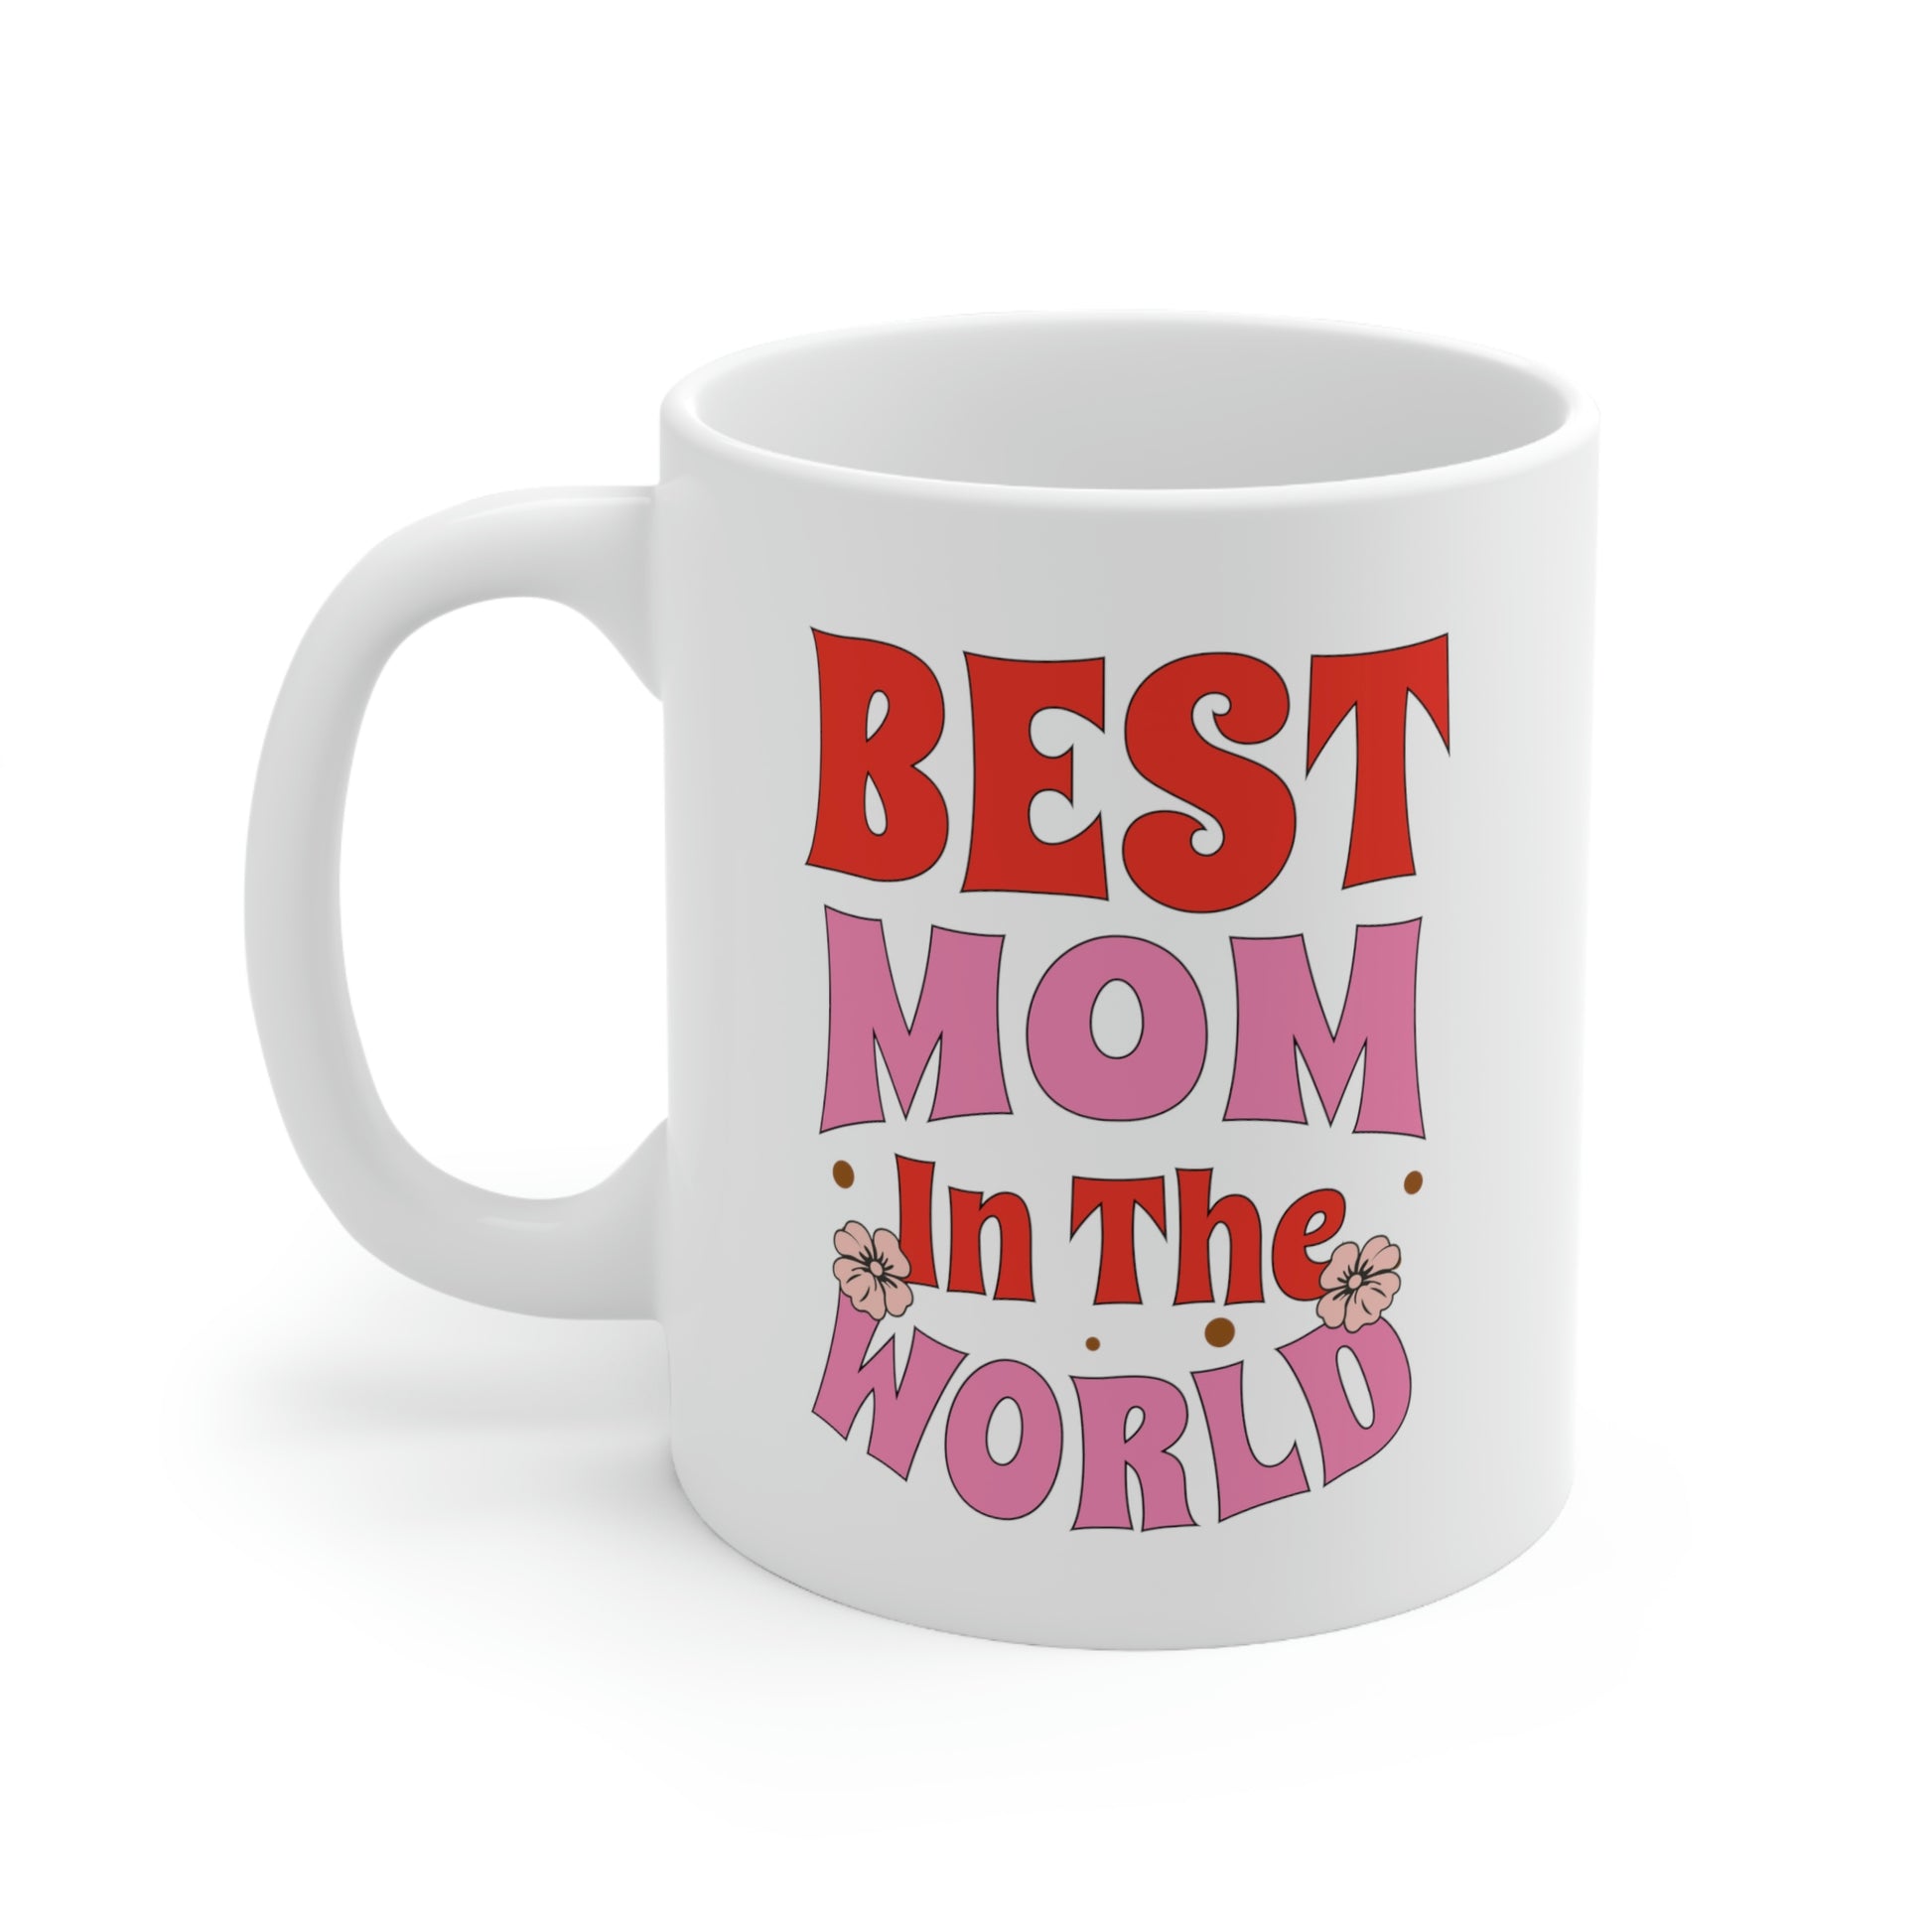 Battery Life of a Boy Mom, Mom Ceramic Mug 11oz